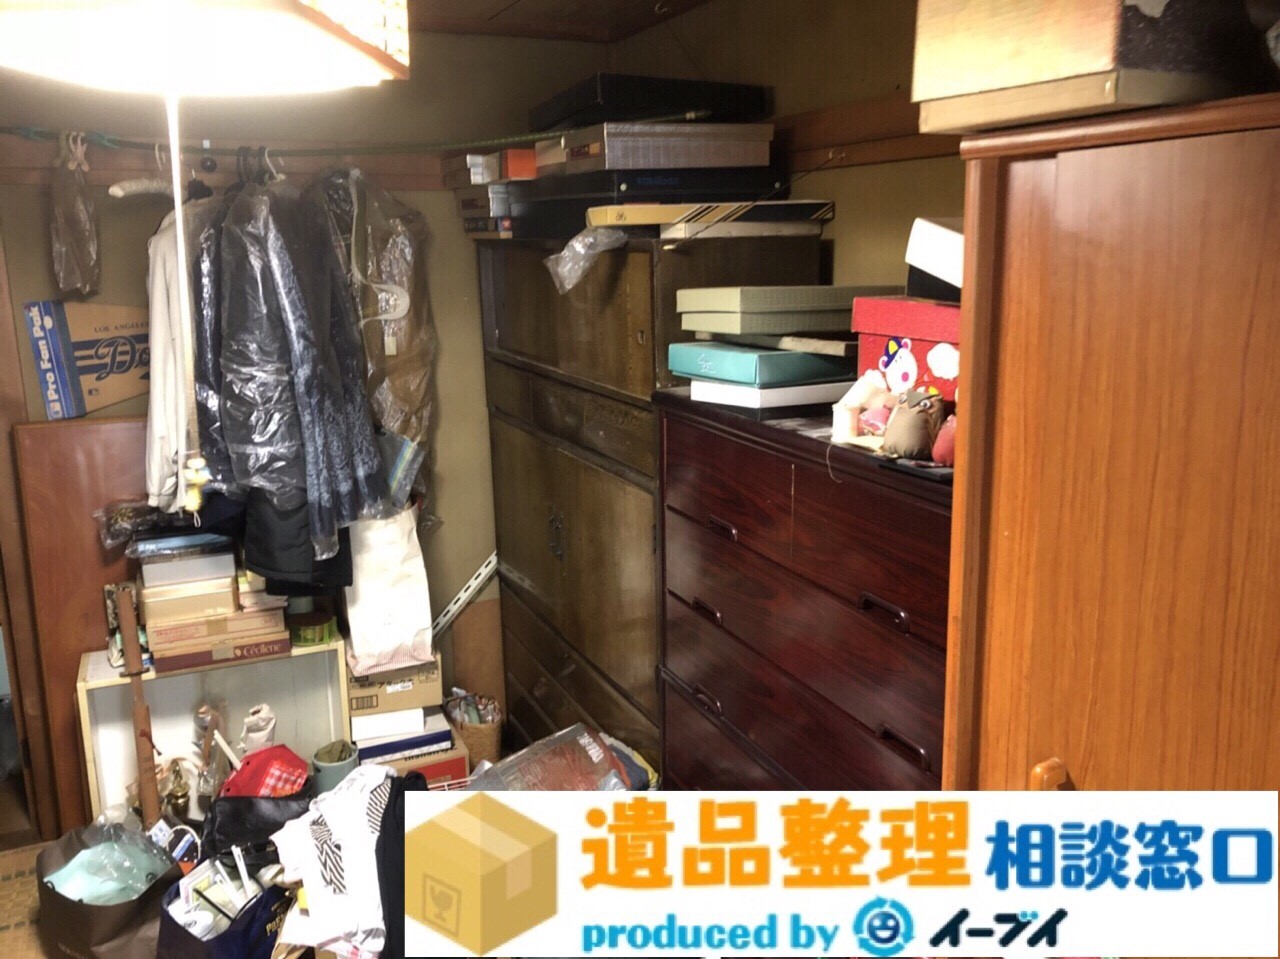 大阪府富田林市で遺品整理に伴い和室の遺品の片付けをしました。のアイキャッチ